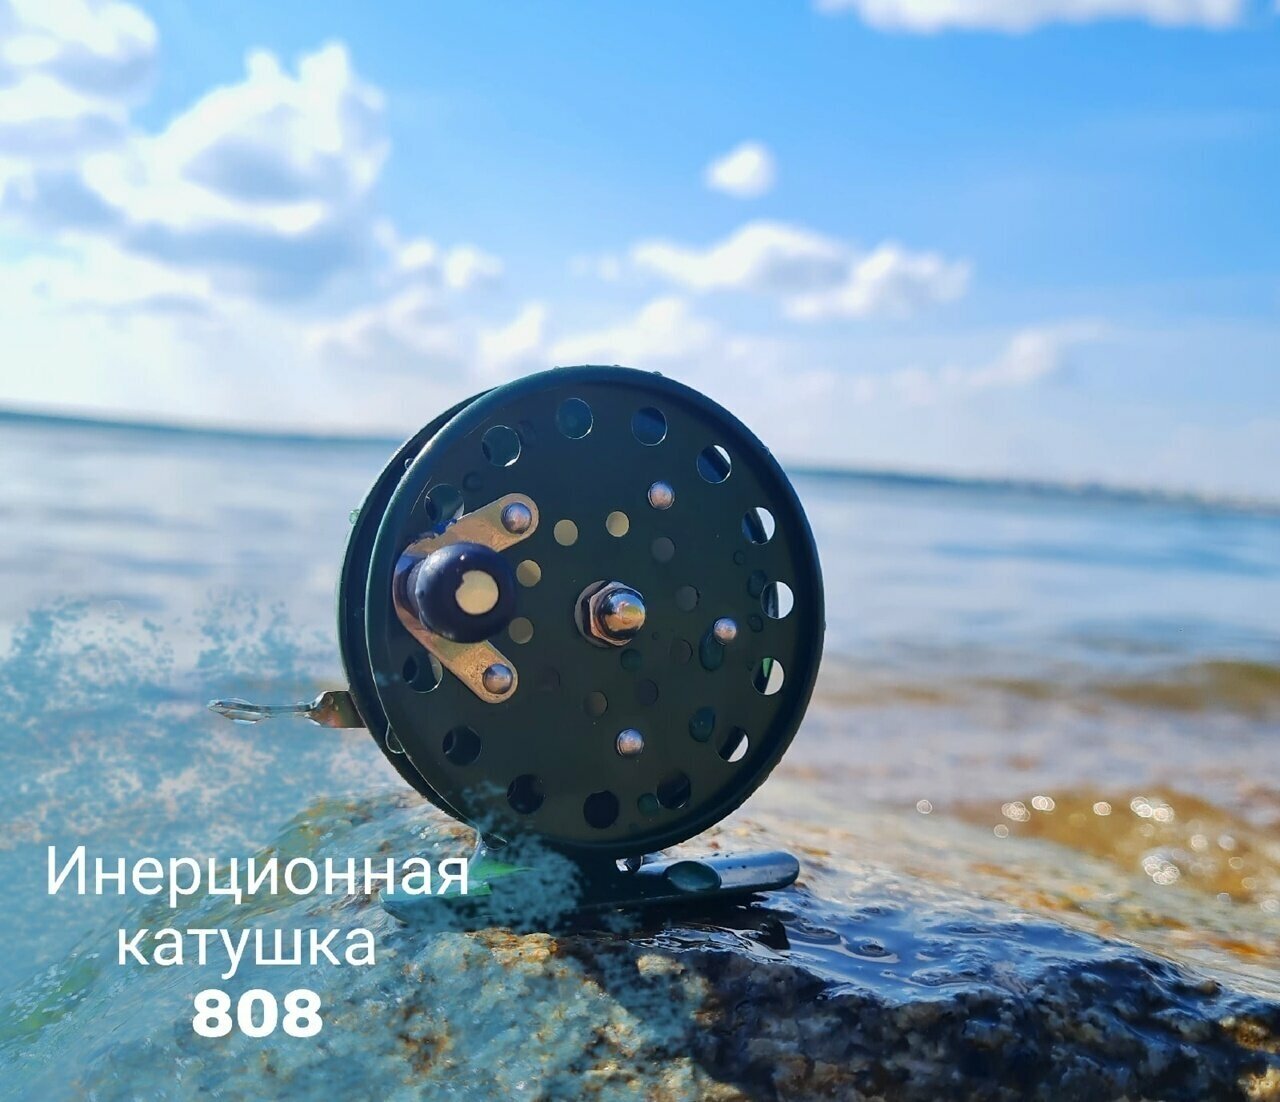 Катушка для рыбалки 808 инерционная d65 мм